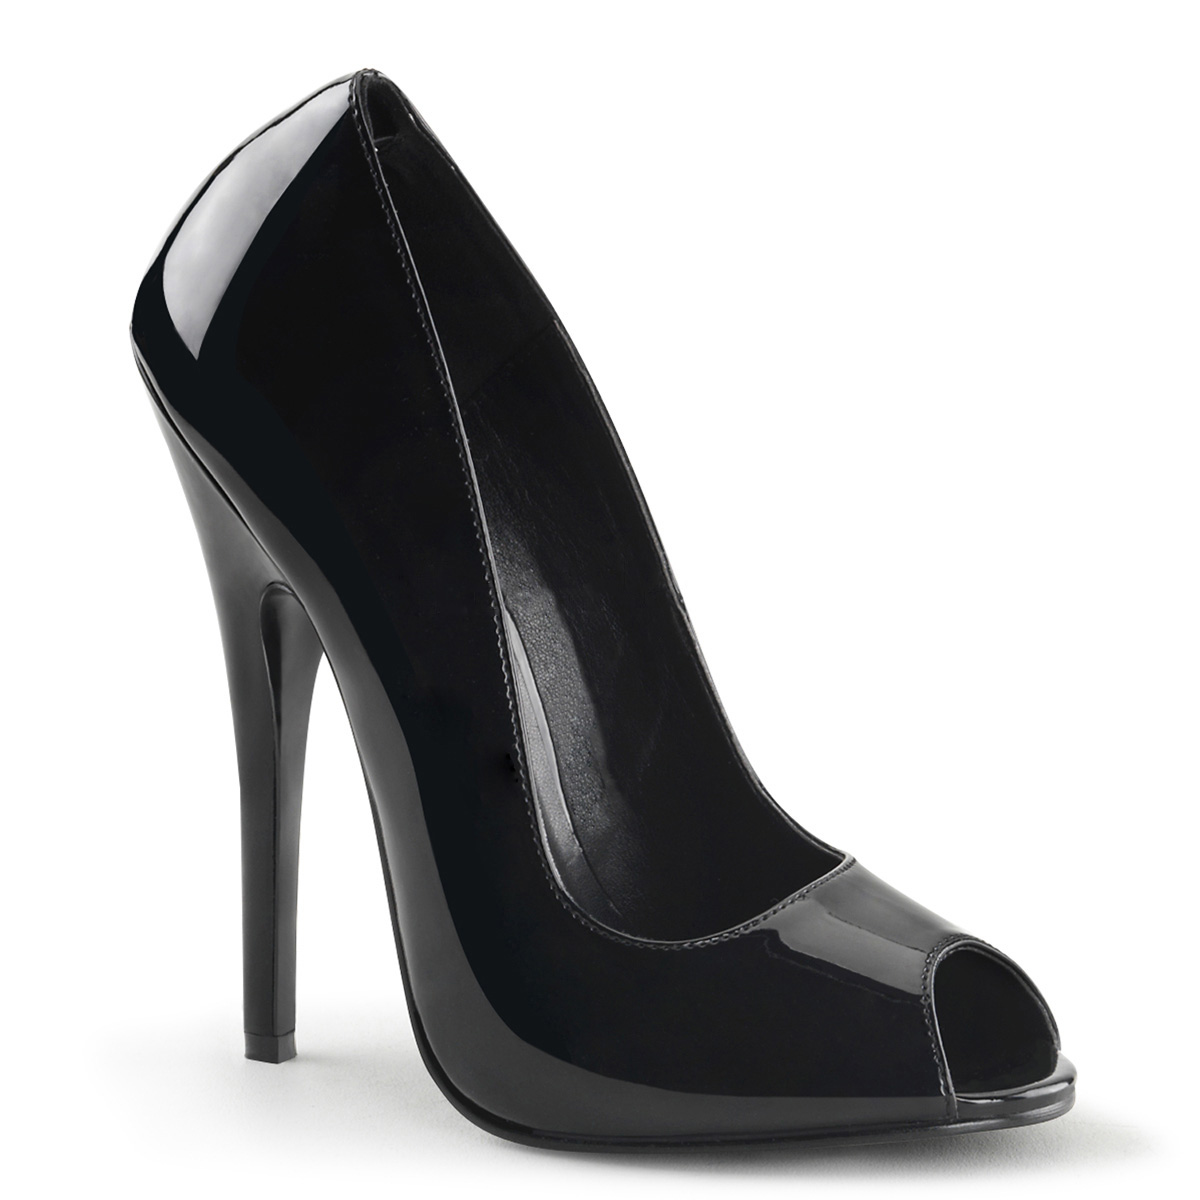 Buy > black high heels peep toe > in stock